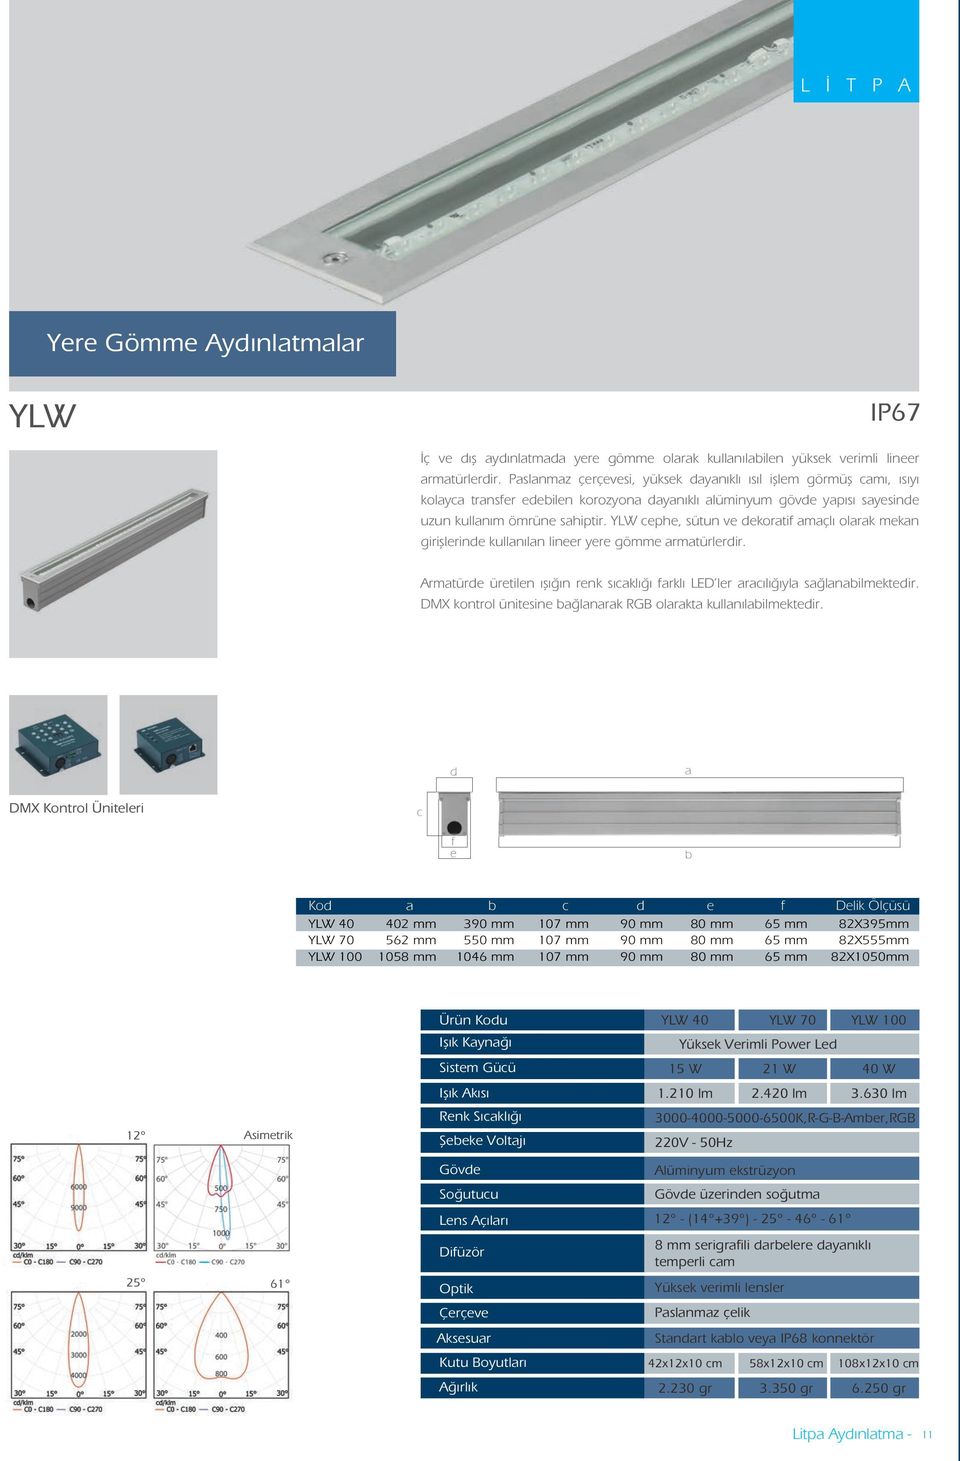 YLW cephe, sütun ve dekoratif amaçlı olarak mekan girişlerinde kullanılan lineer yere gömme armatürlerdir. Armatürde üretilen ışığın renk sıcaklığı farklı LED ler aracılığıyla sağlanabilmektedir.